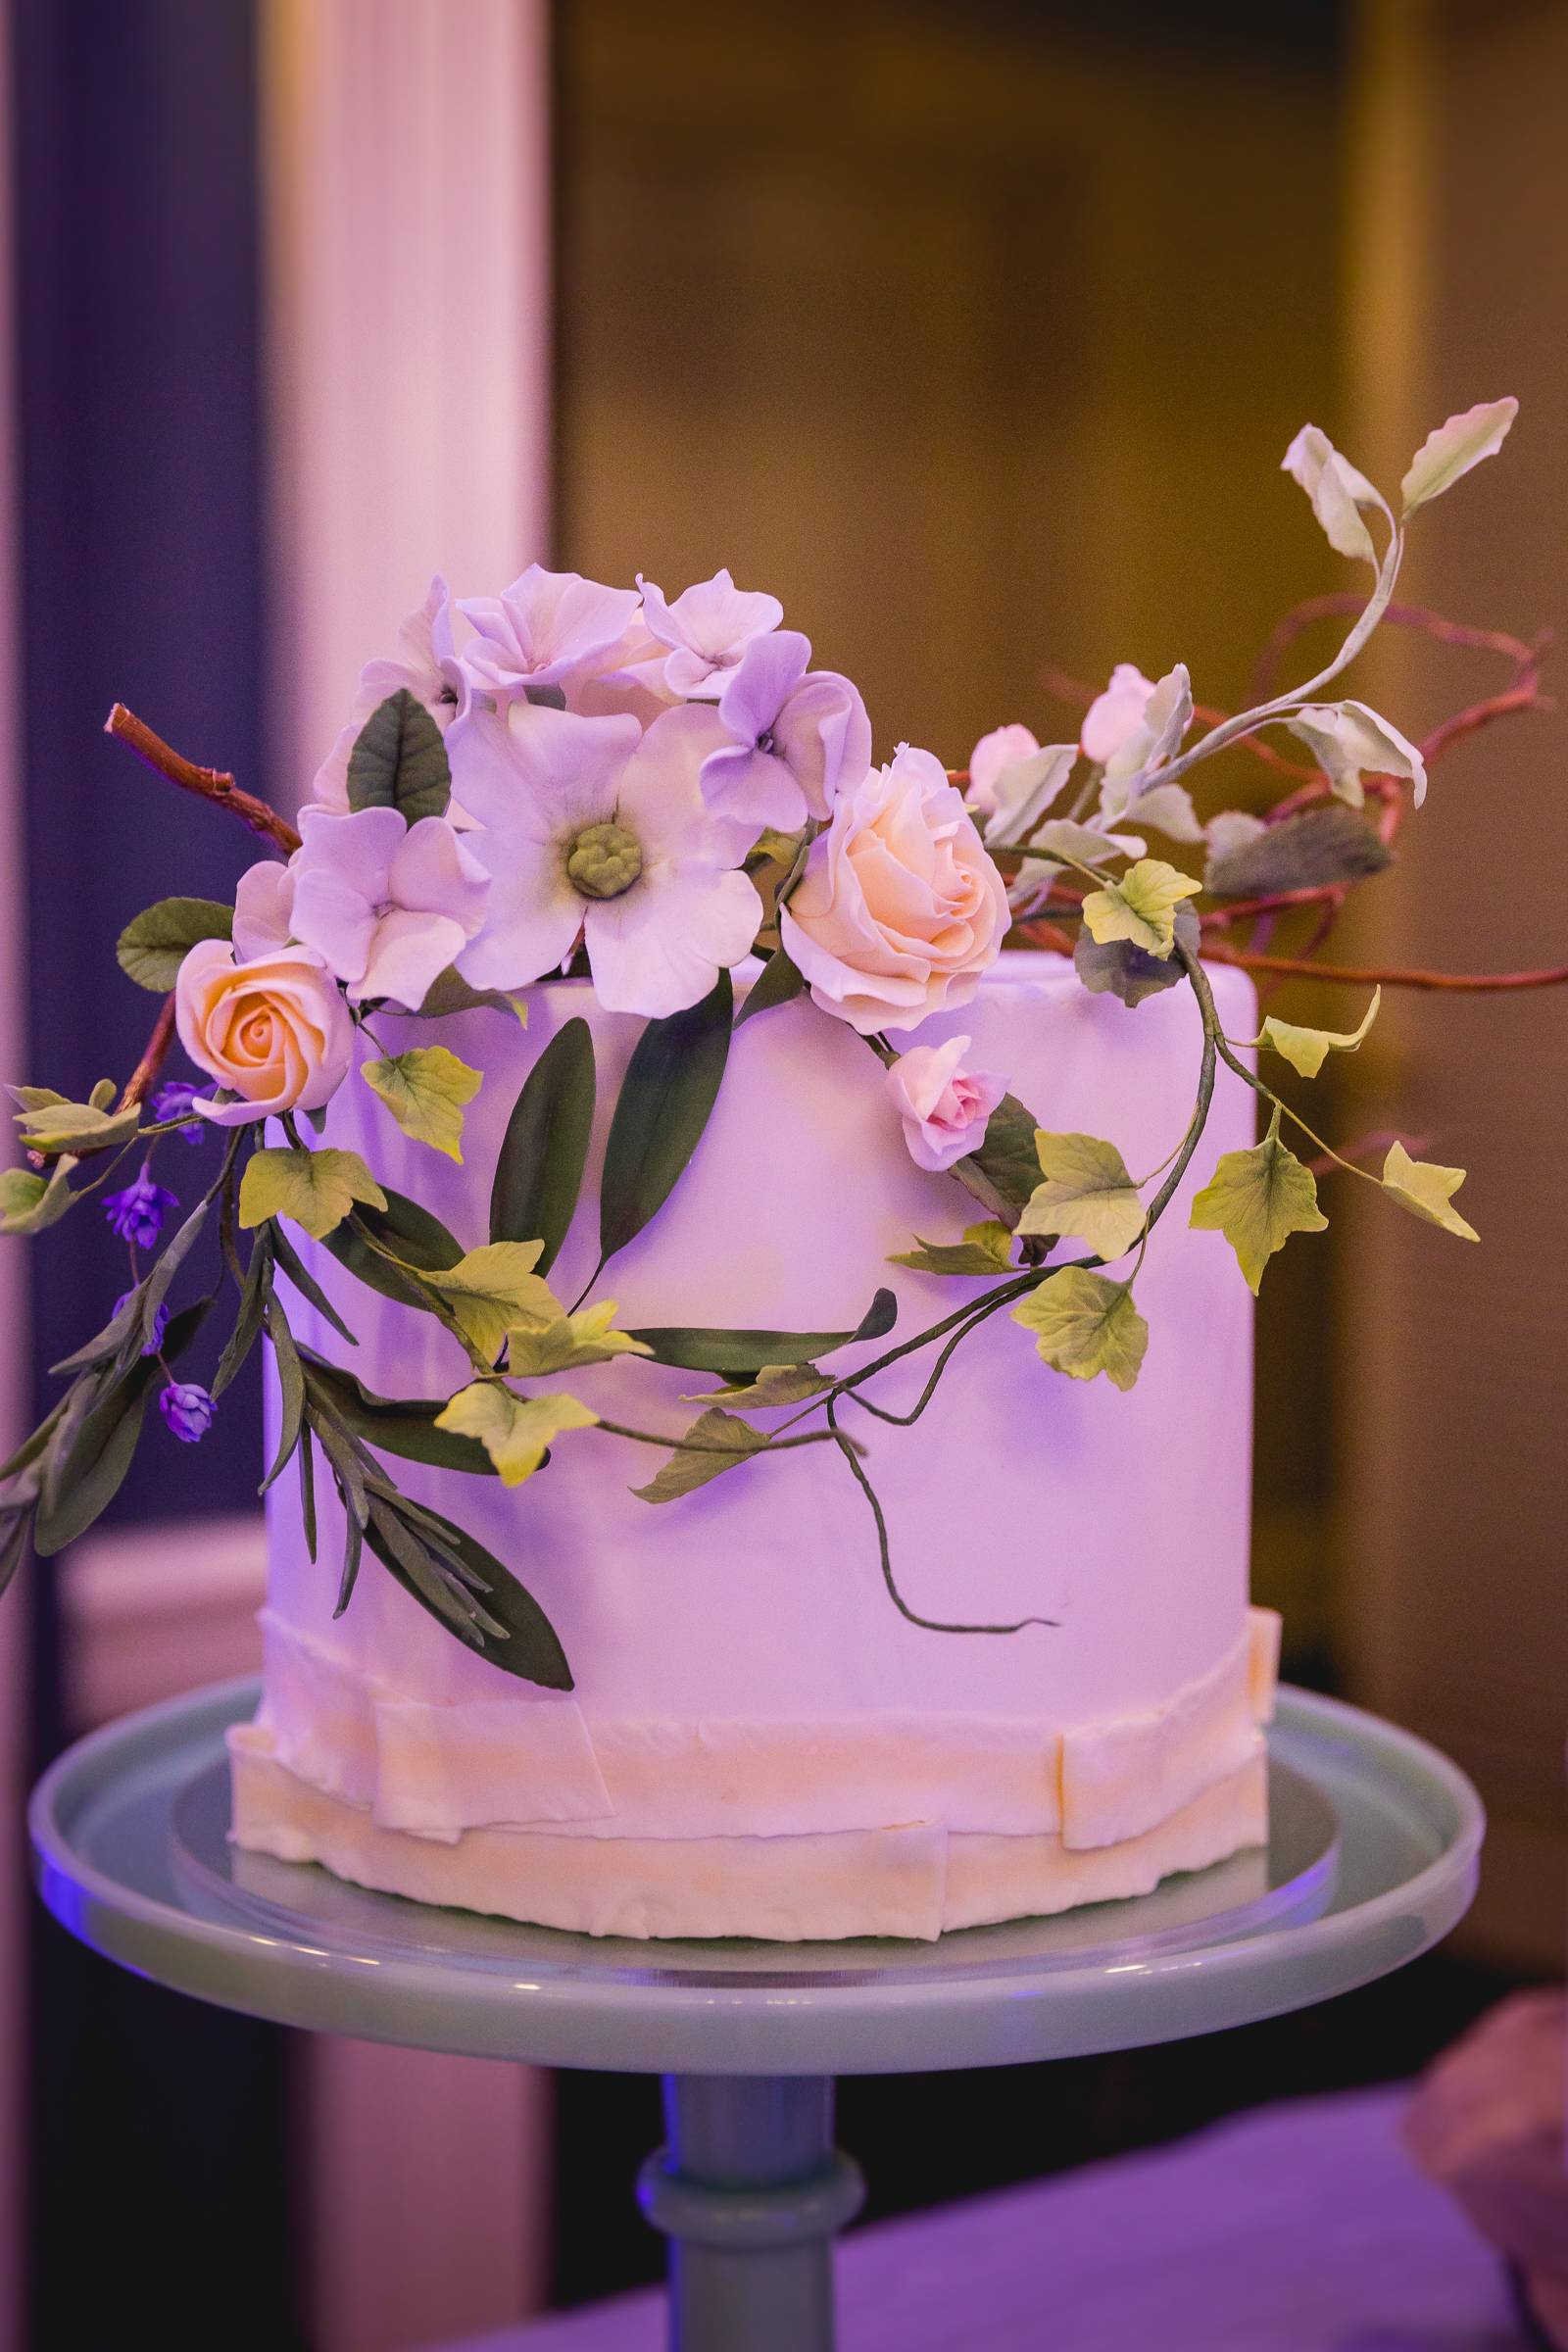 ethereal fine art wedding cake floral design wedding trends 2019